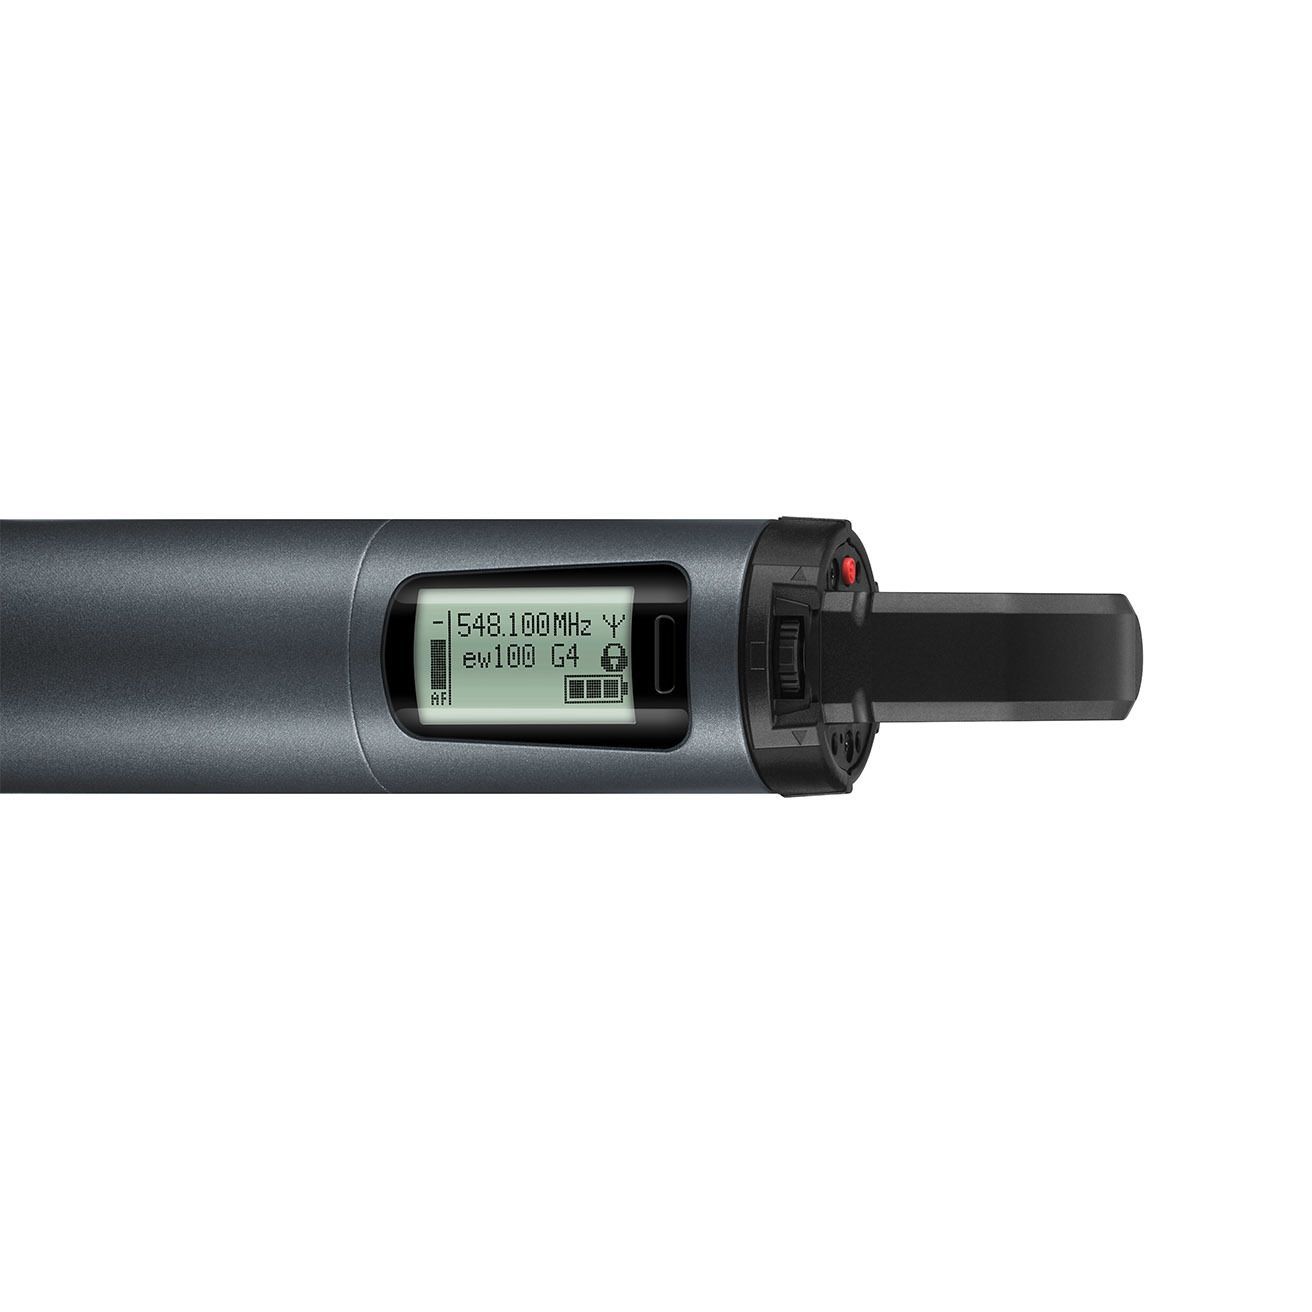 Sennheiser SKM 100 G4-E Funkmikrofon Handsender  für ew-100 Wireless-Systeme